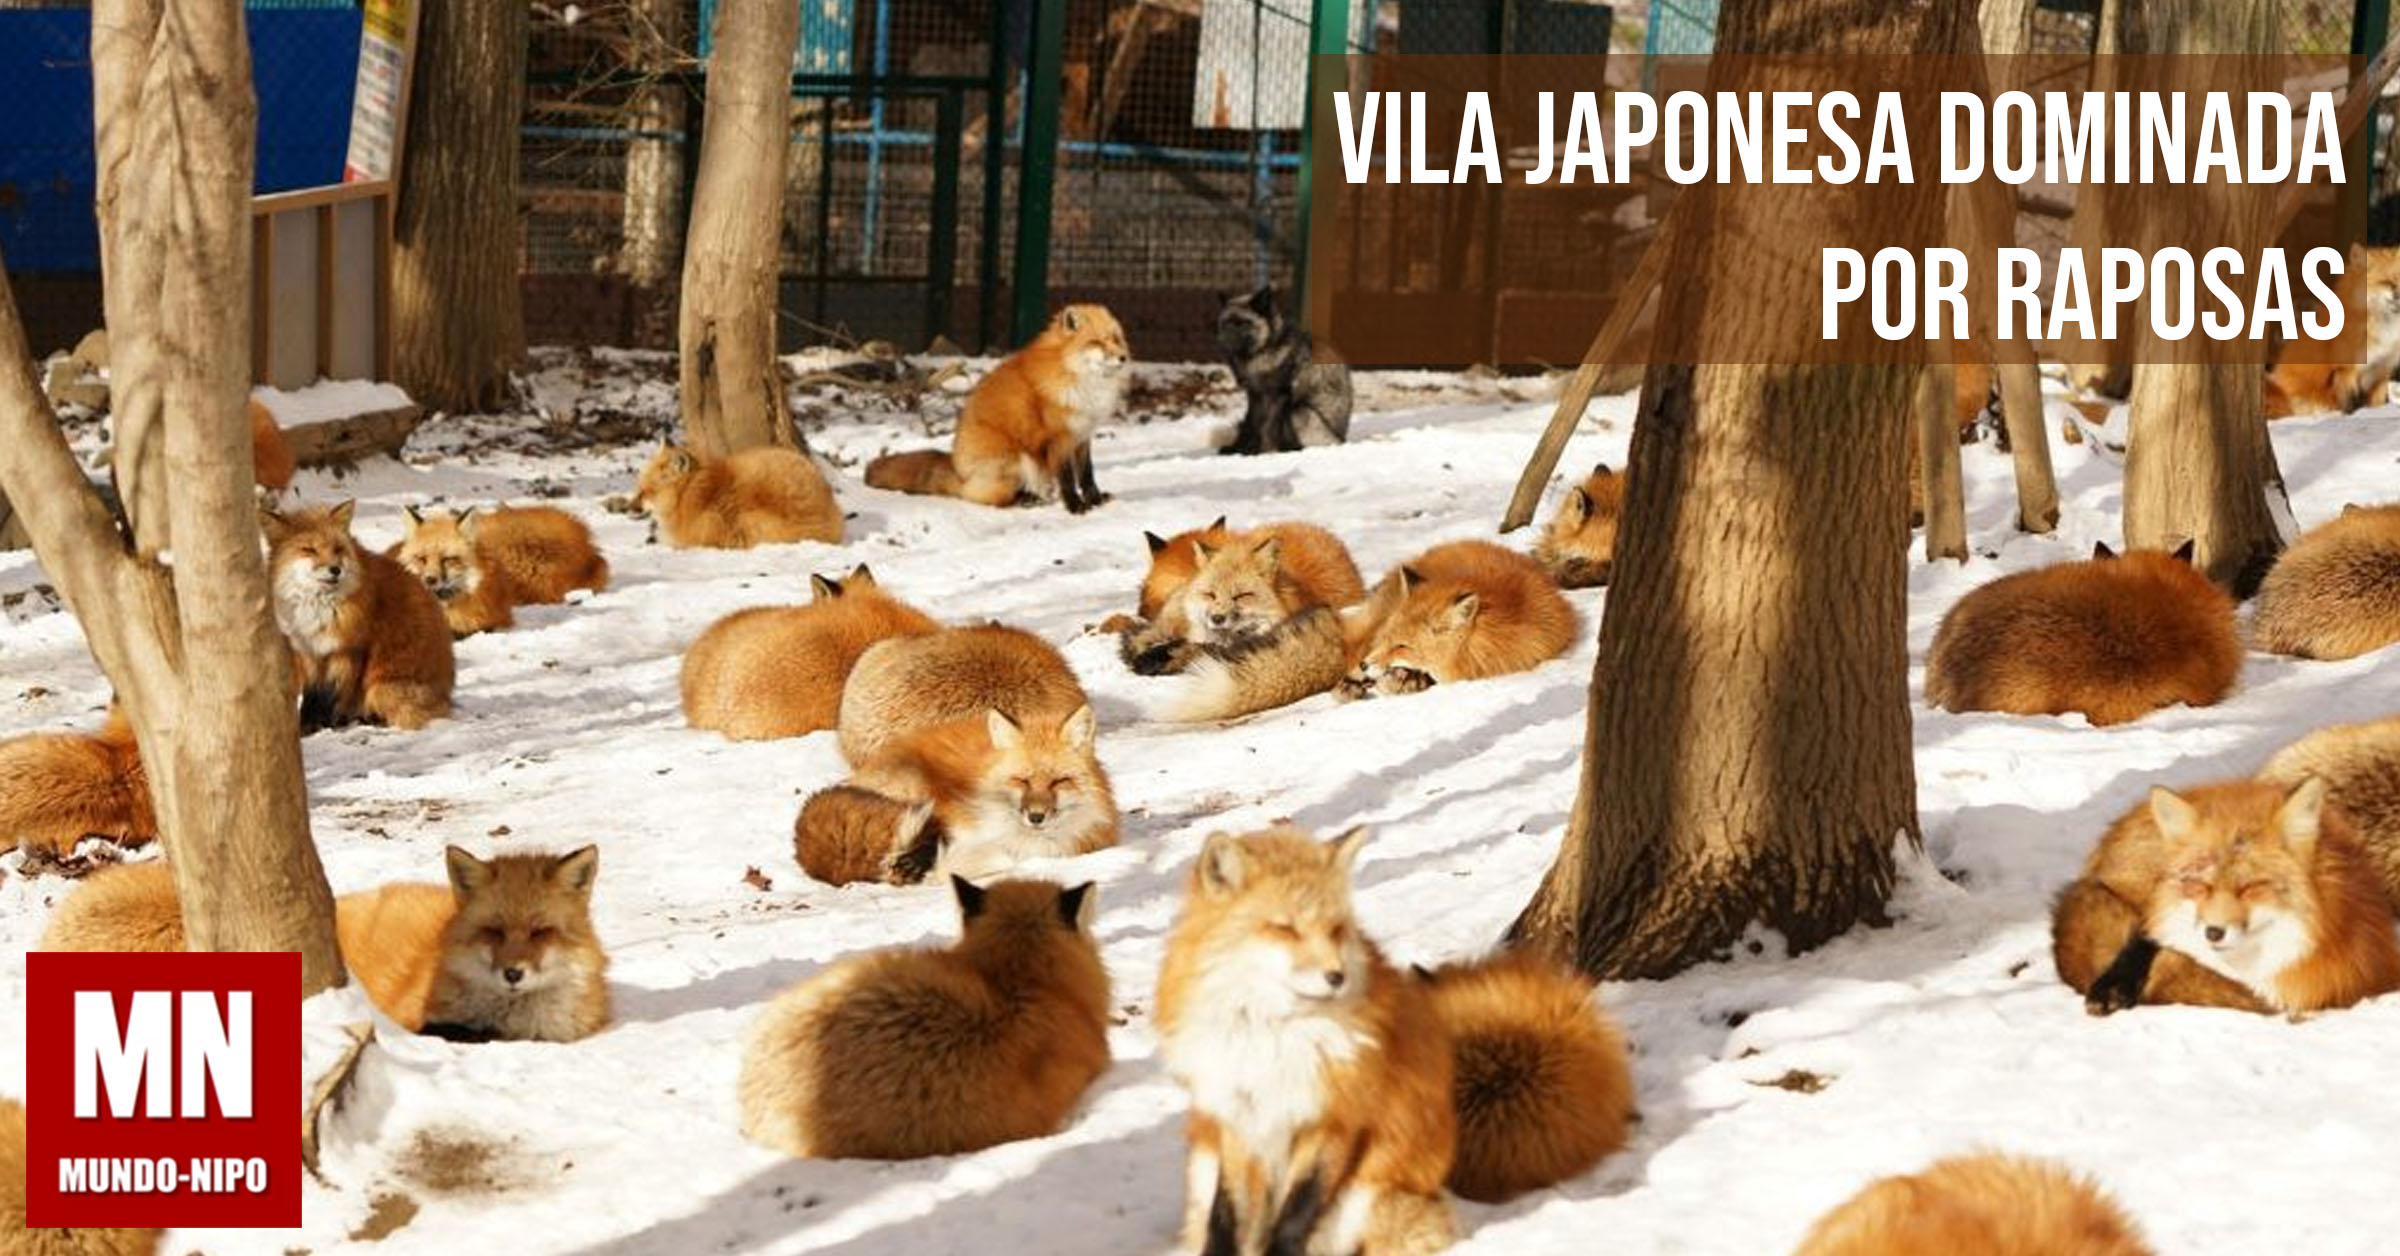 Many fox. Дзао-Кицунэ-Мура. Дзао Кицунэ Мура деревня. Дзао Кицунэ Мура, Япония — лисы. Лисья деревня в Японии.